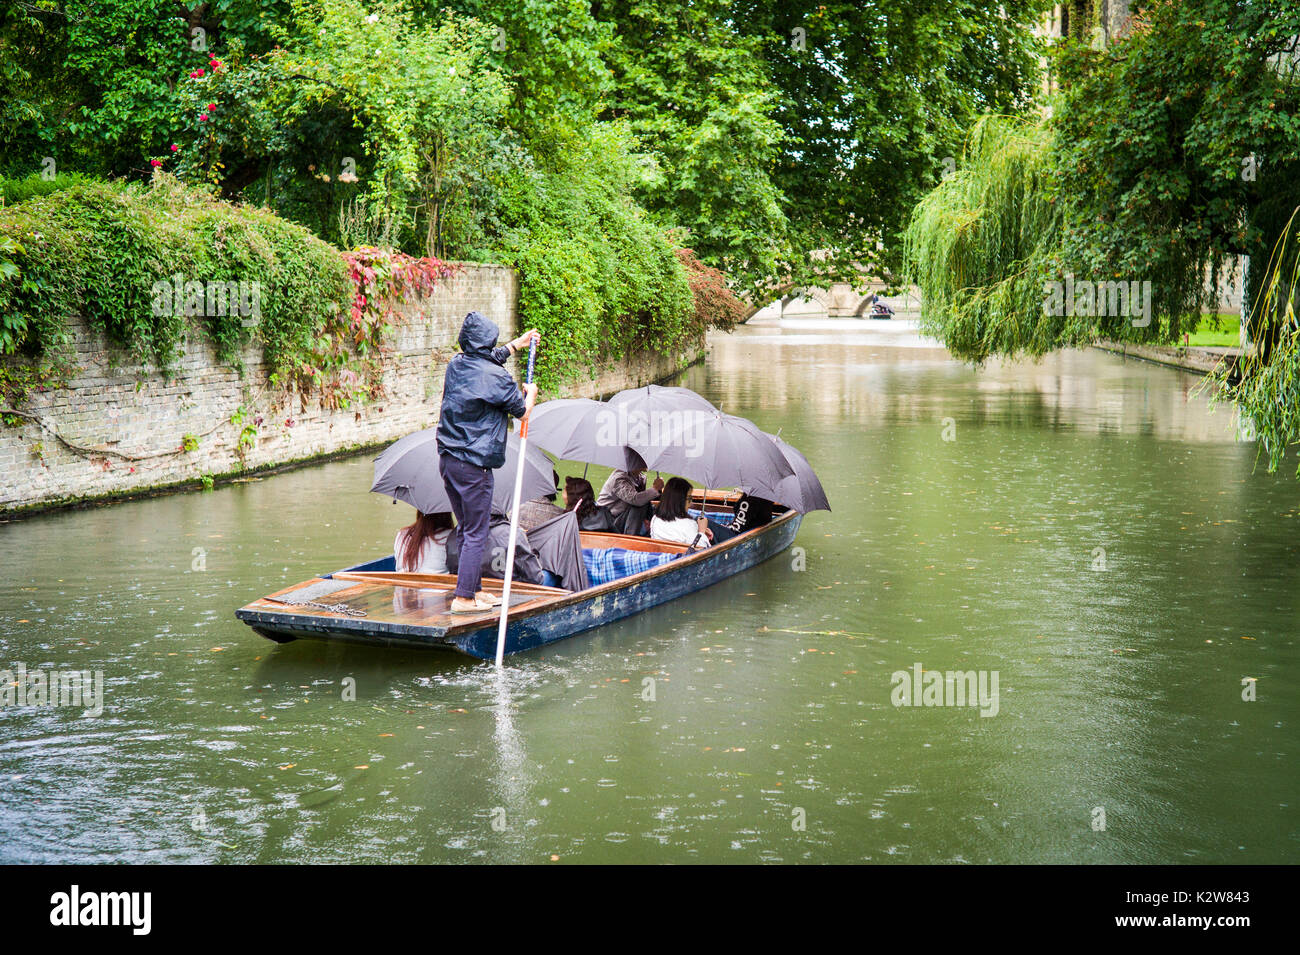 Piquer dans la pluie. Par temps humide, les touristes prennent des punts guidés sur la rivière Cam sous la pluie, à Cambridge, au Royaume-Uni Banque D'Images